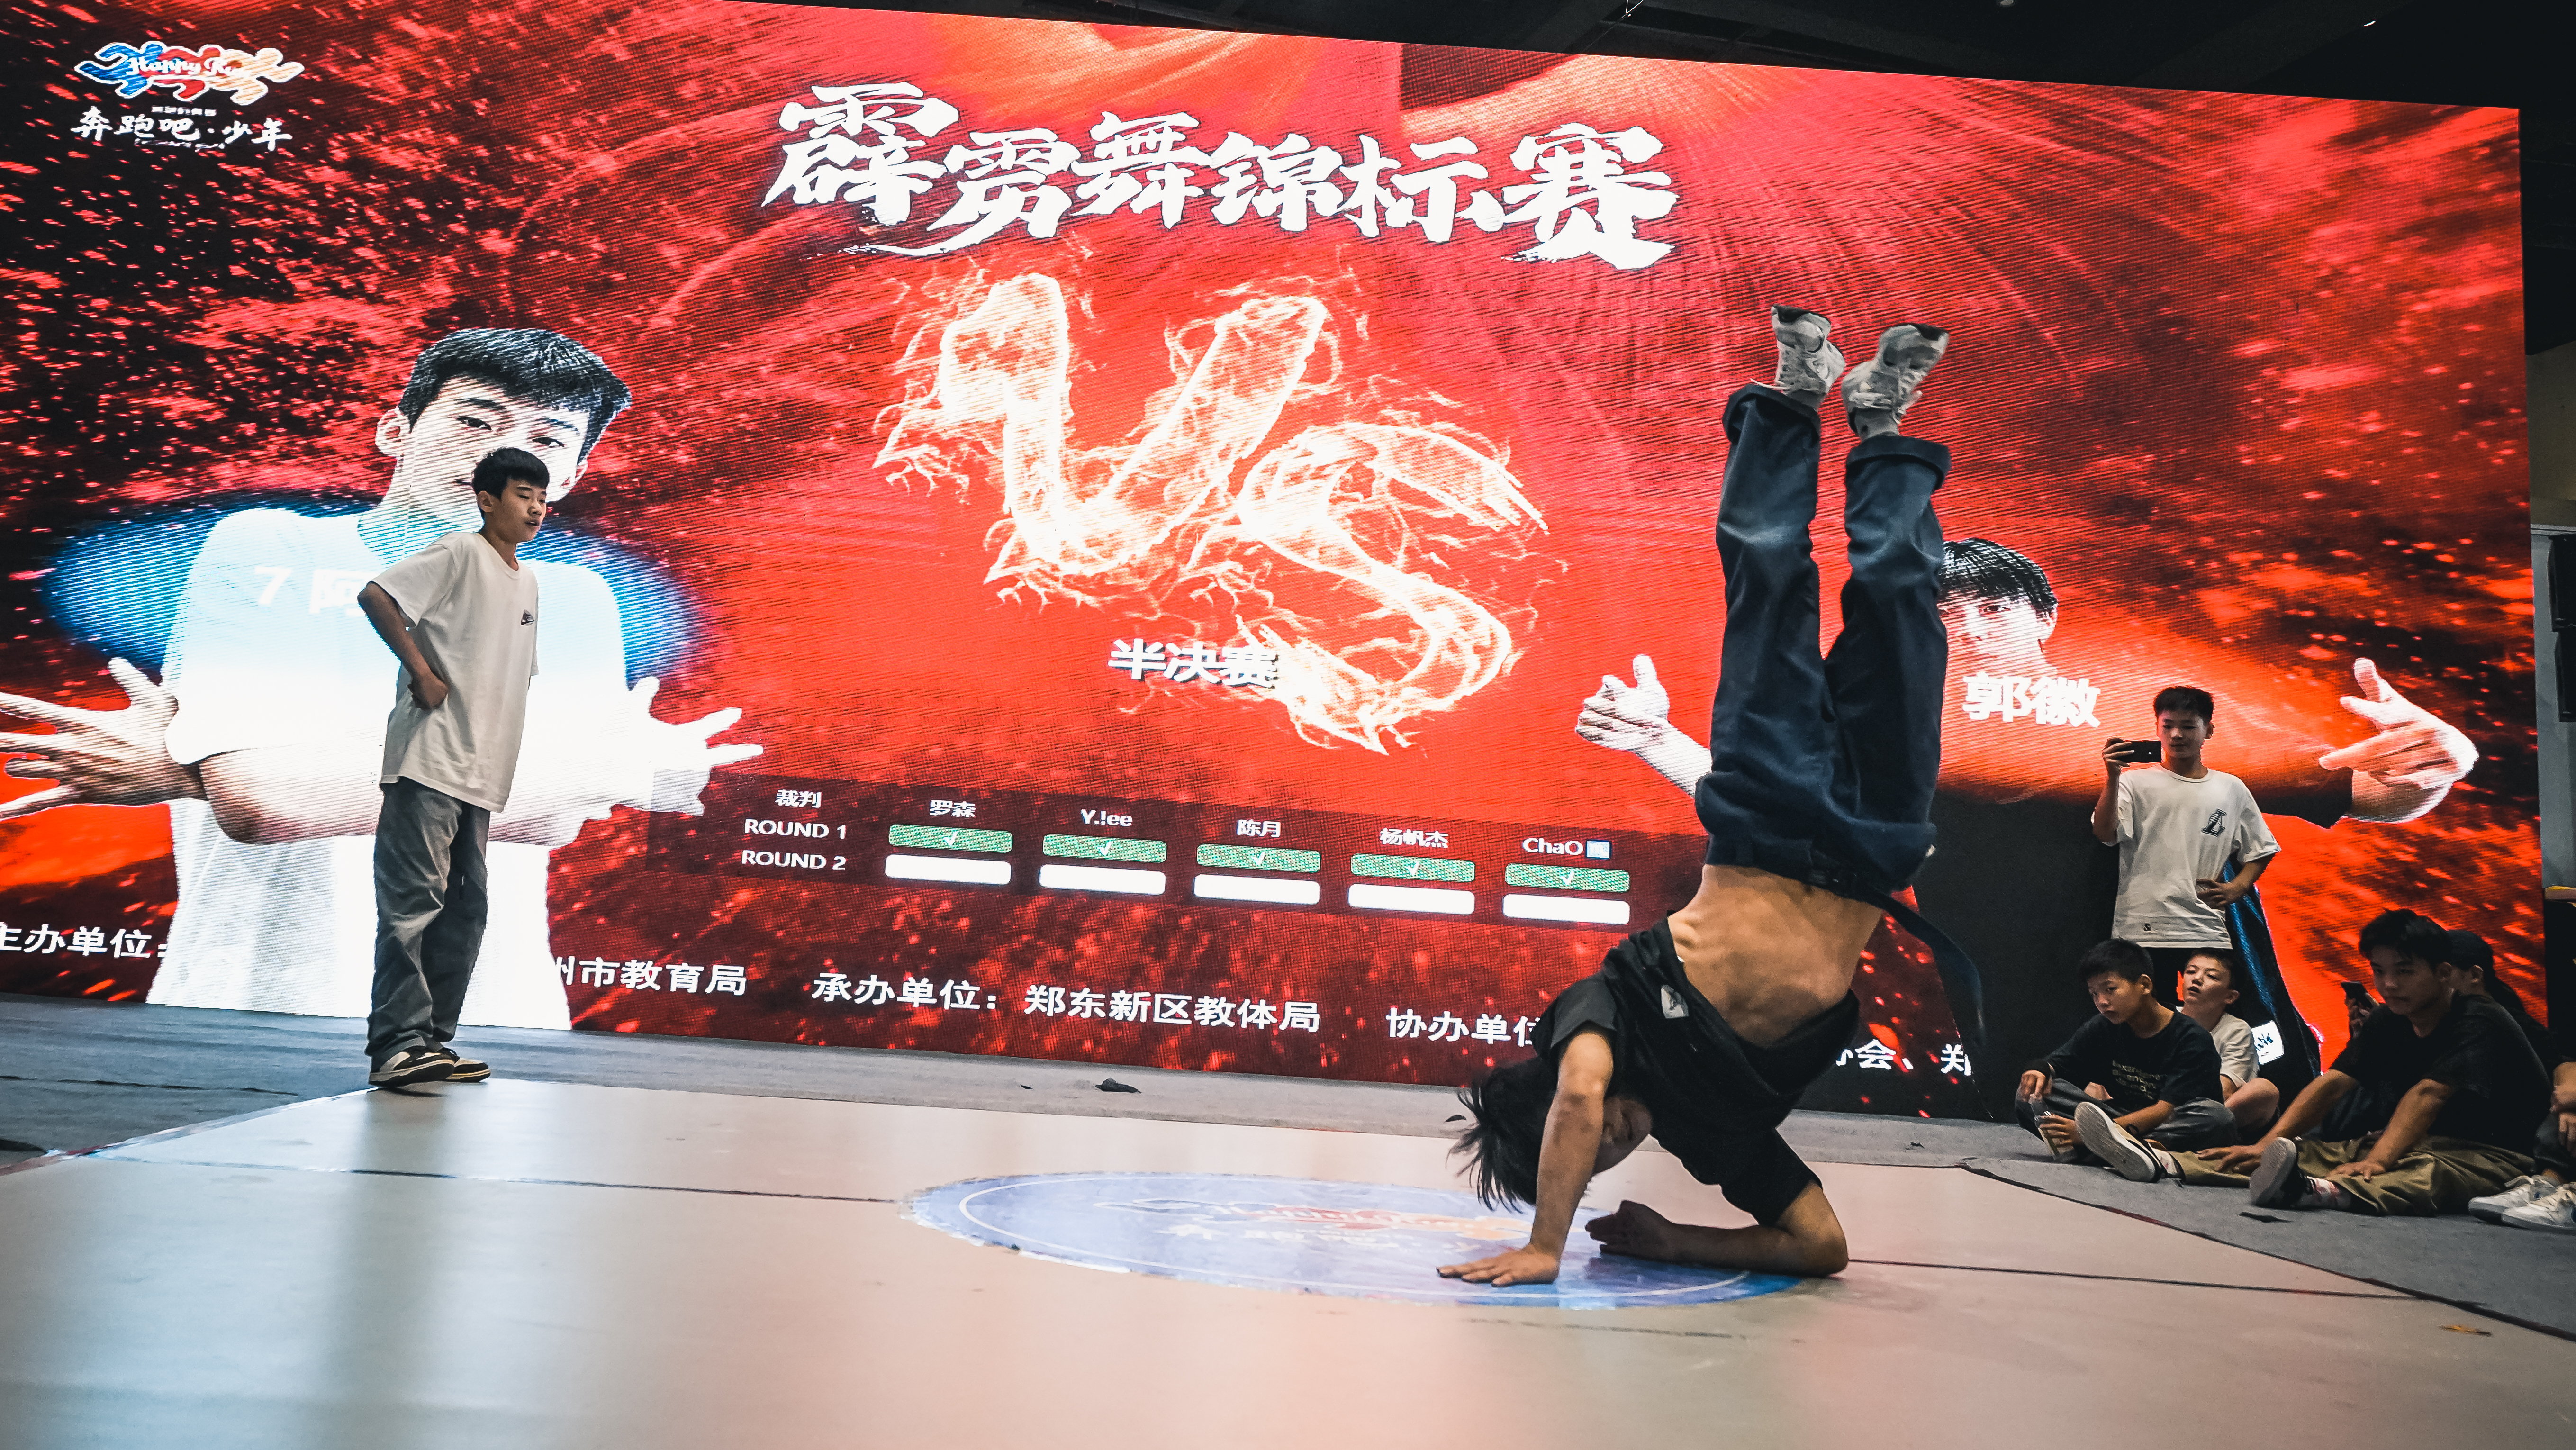 2023年郑州市青少年街舞（霹雳舞）锦标赛开赛